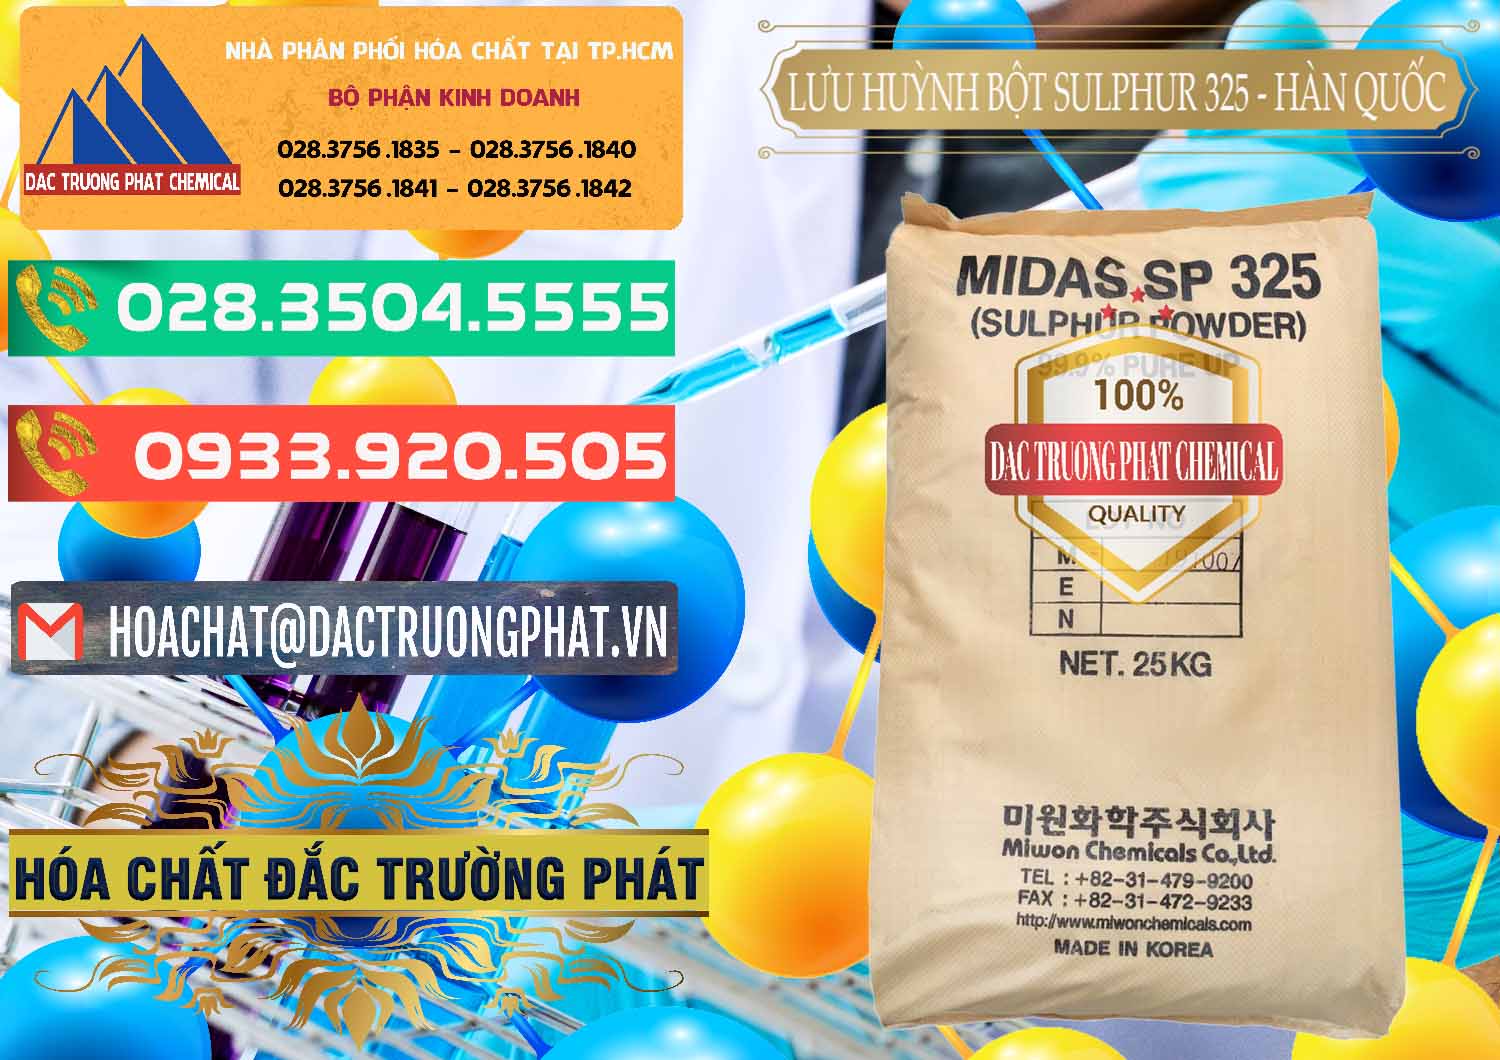 Công ty chuyên kinh doanh và bán Lưu huỳnh Bột - Sulfur Powder Midas SP 325 Hàn Quốc Korea - 0198 - Cty chuyên bán - phân phối hóa chất tại TP.HCM - congtyhoachat.com.vn